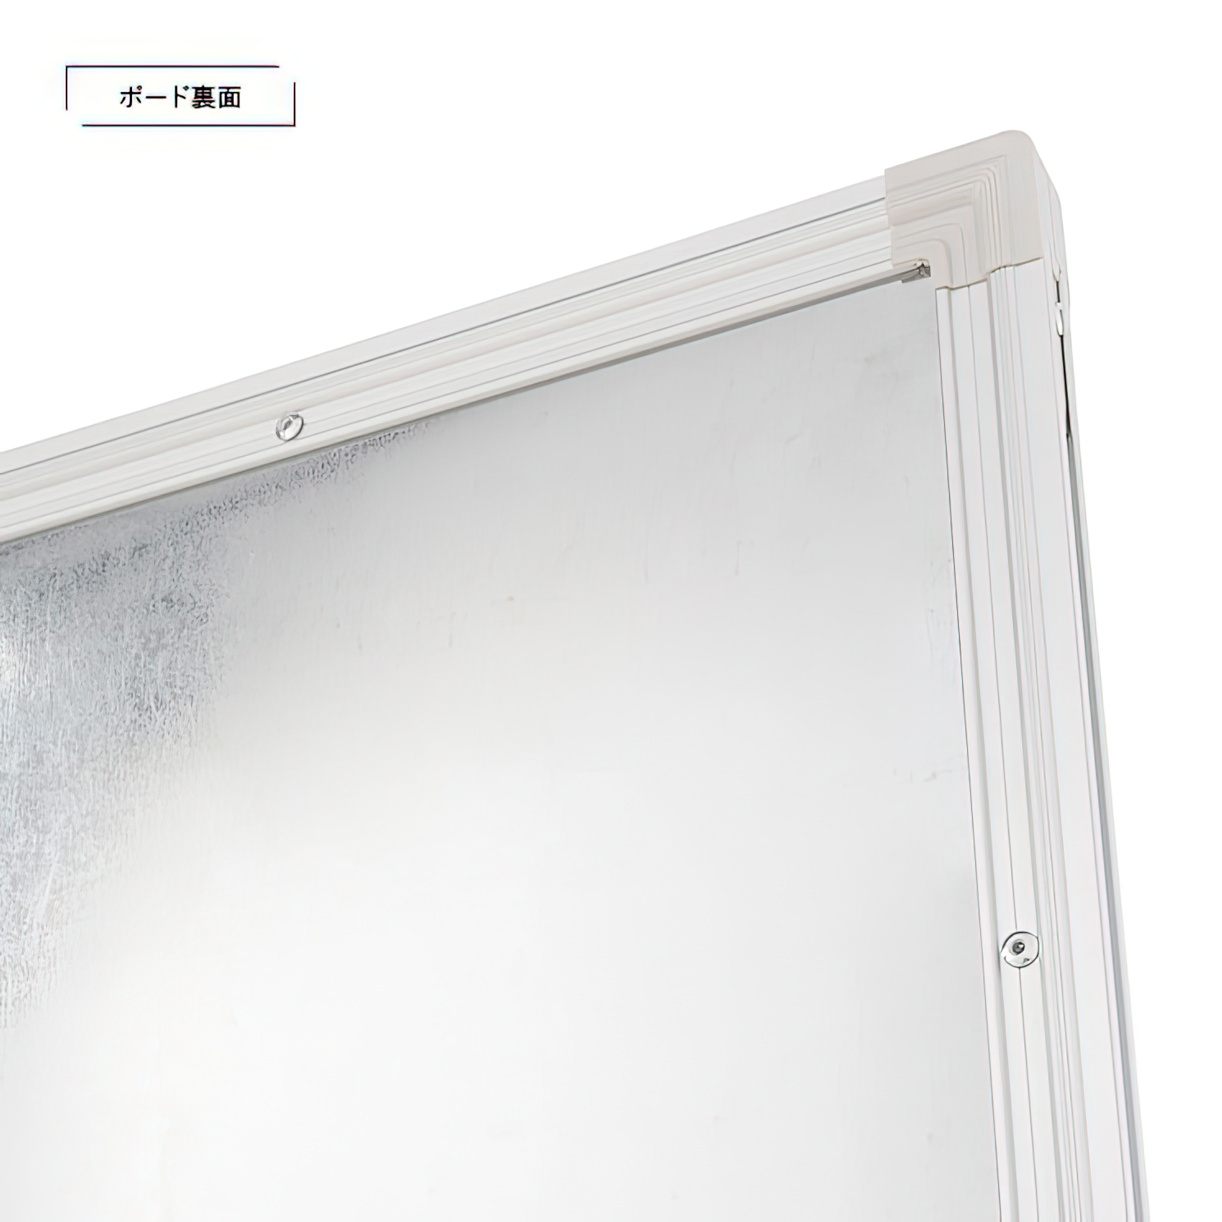 壁掛けホワイトボード 横書き 月予定 幅1200 高さ905 WSK-1290 通販 - ホワイトボード・掲示板 | オフィス家具のカグクロ